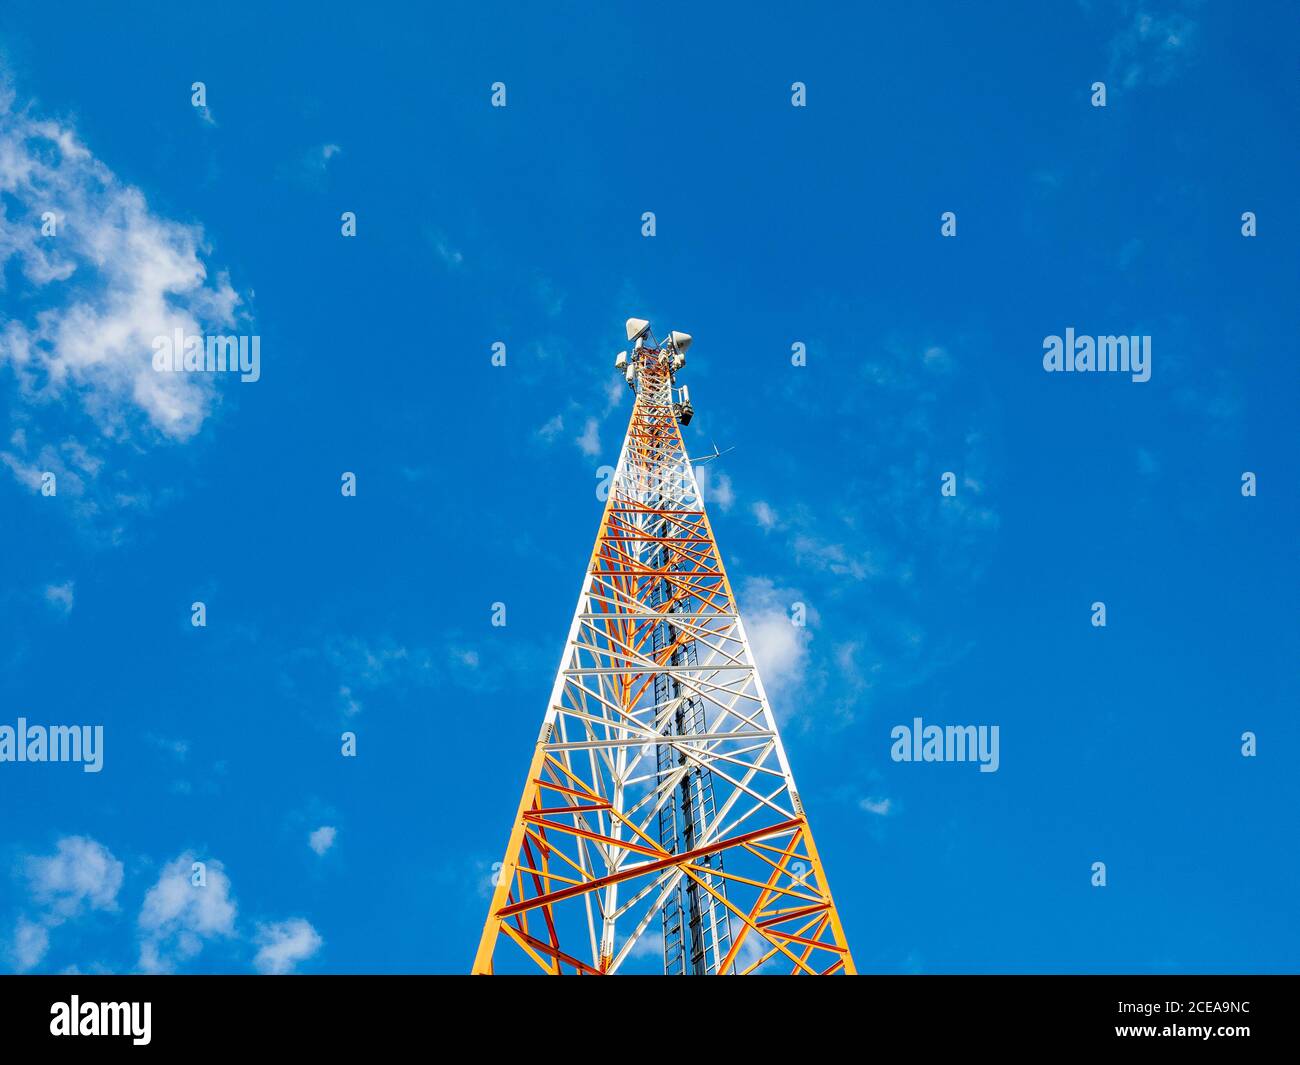 Der Turm des Mobilfunkanbieters stürzte in den blauen Himmel. Vorwärts zu neuen Technologien, Netzwerken der 5. Generation, die Zukunft ist schon nahe bei uns! Stockfoto